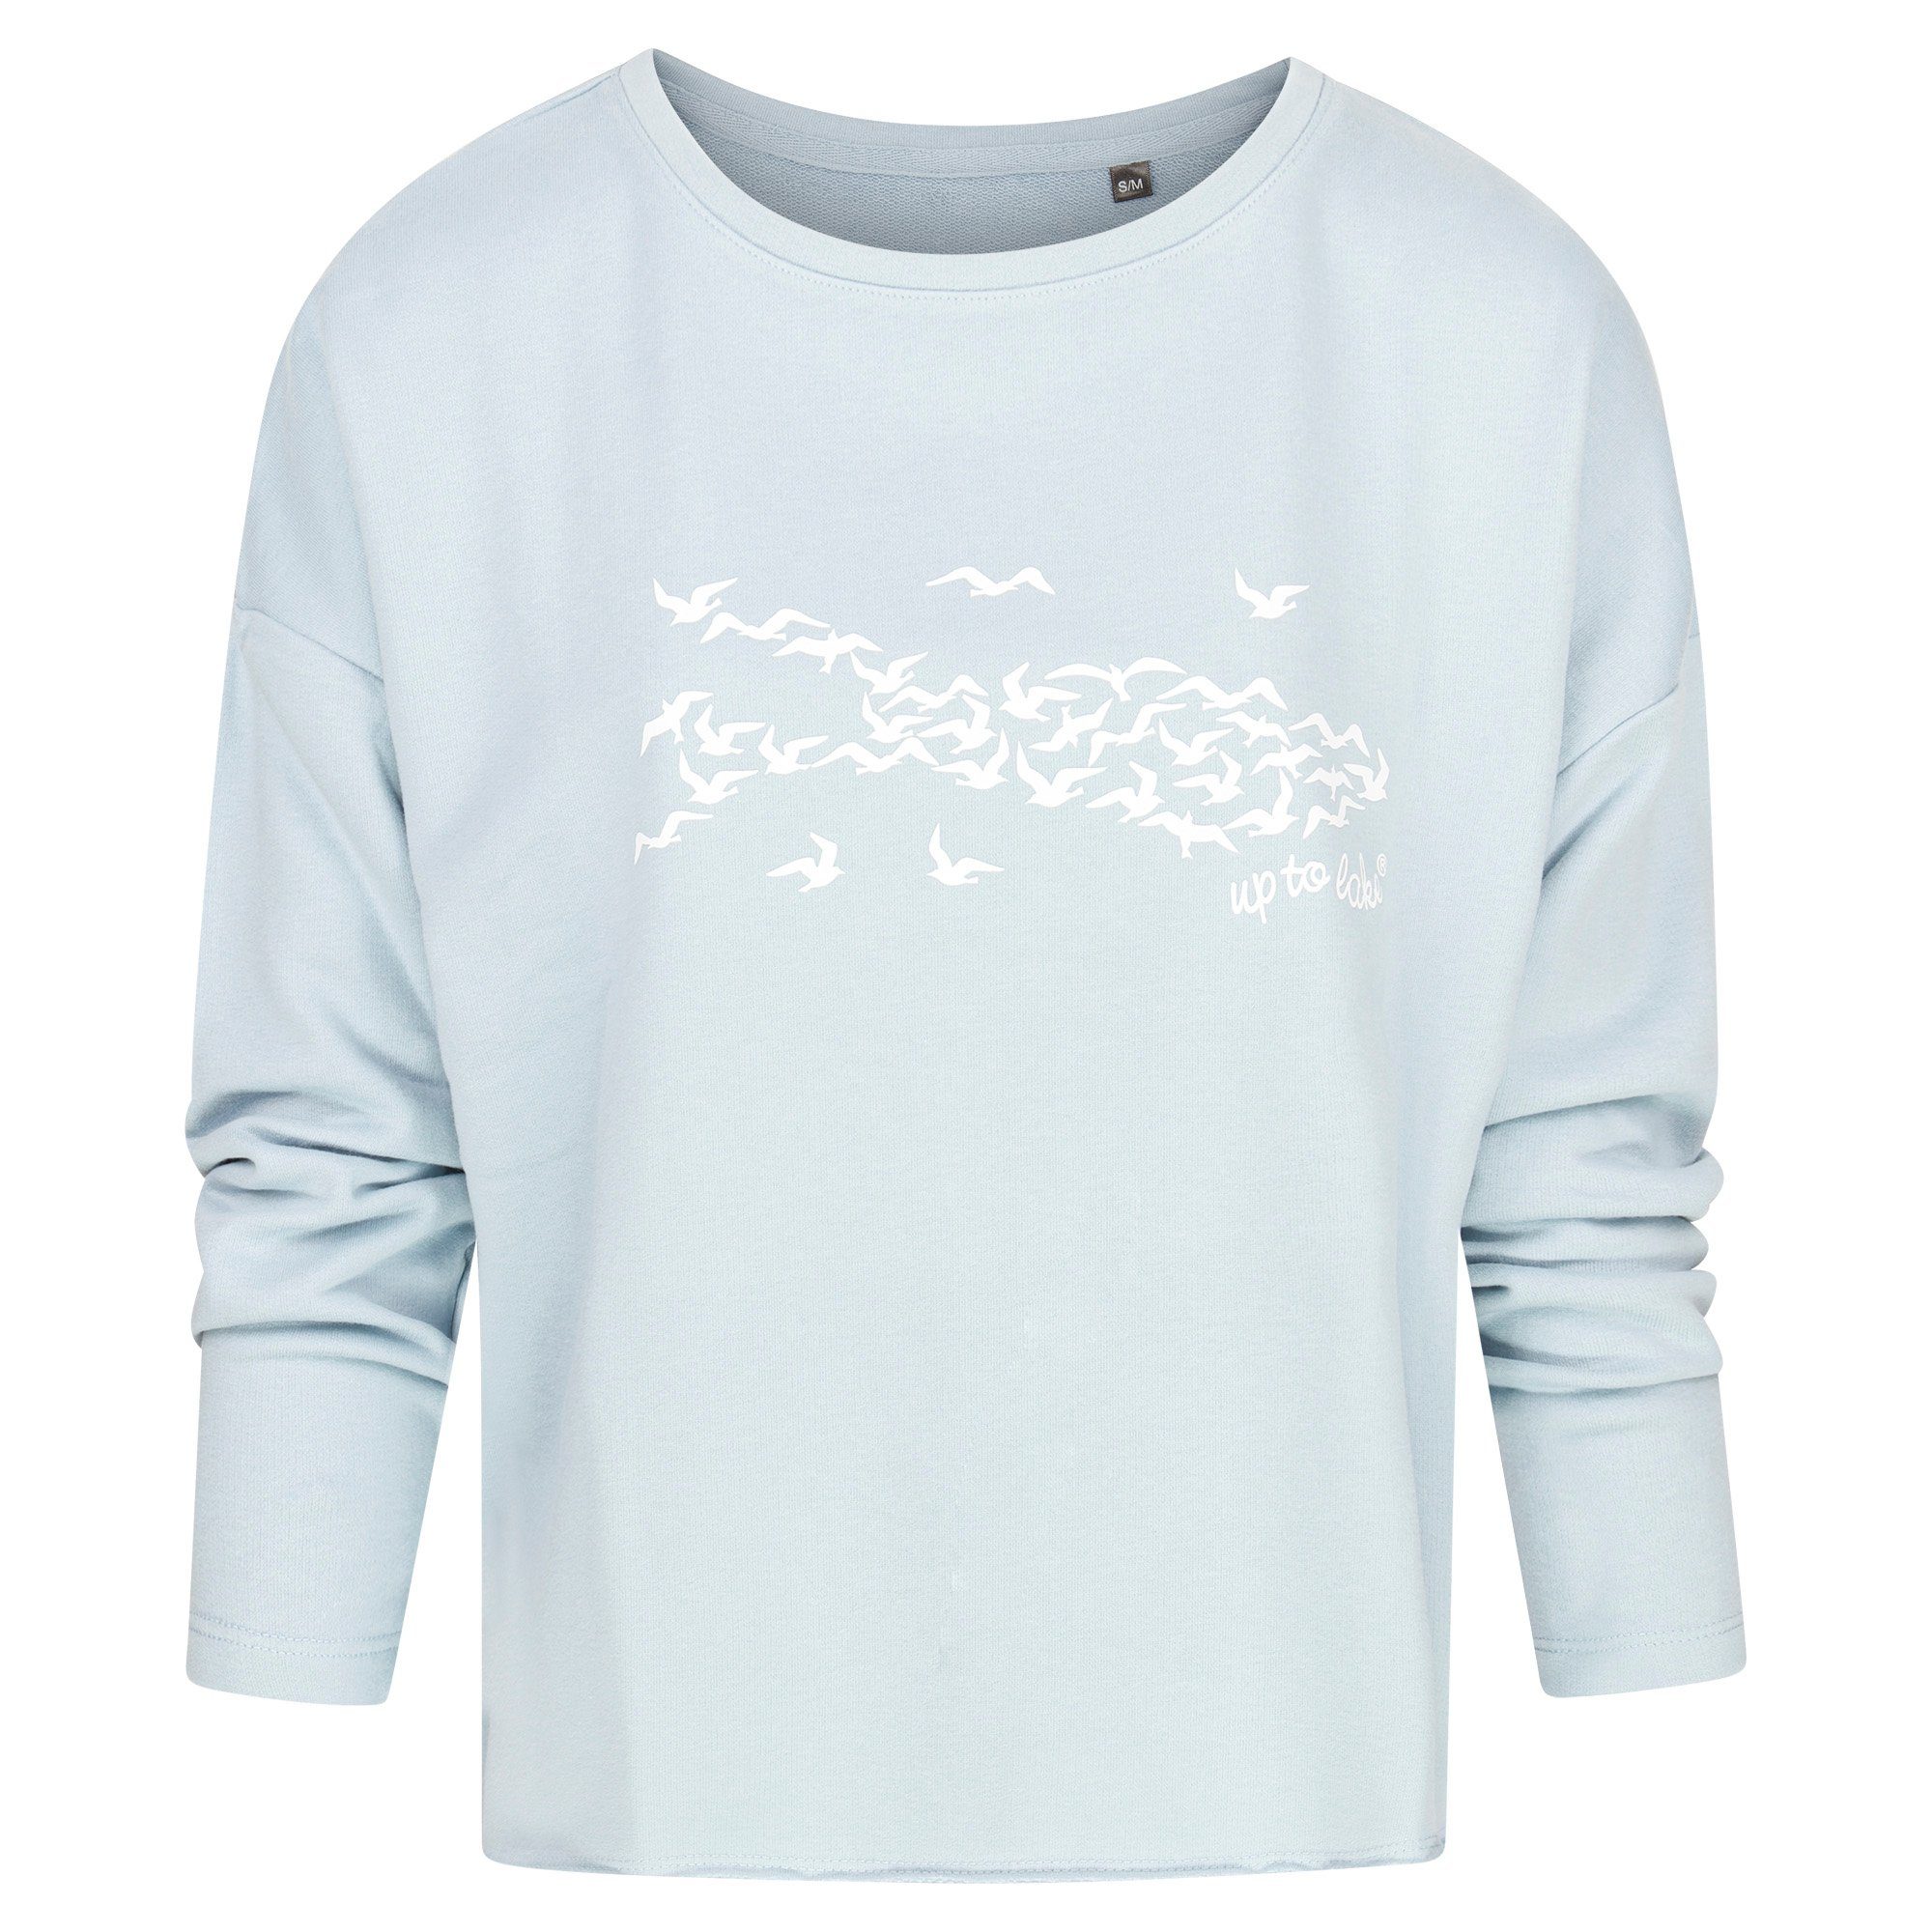 uptolake design Sweatshirt für Damen aus weichem Baumwollstoff mit "Mövensee-Bodensee" Design Hellblau/Weiß